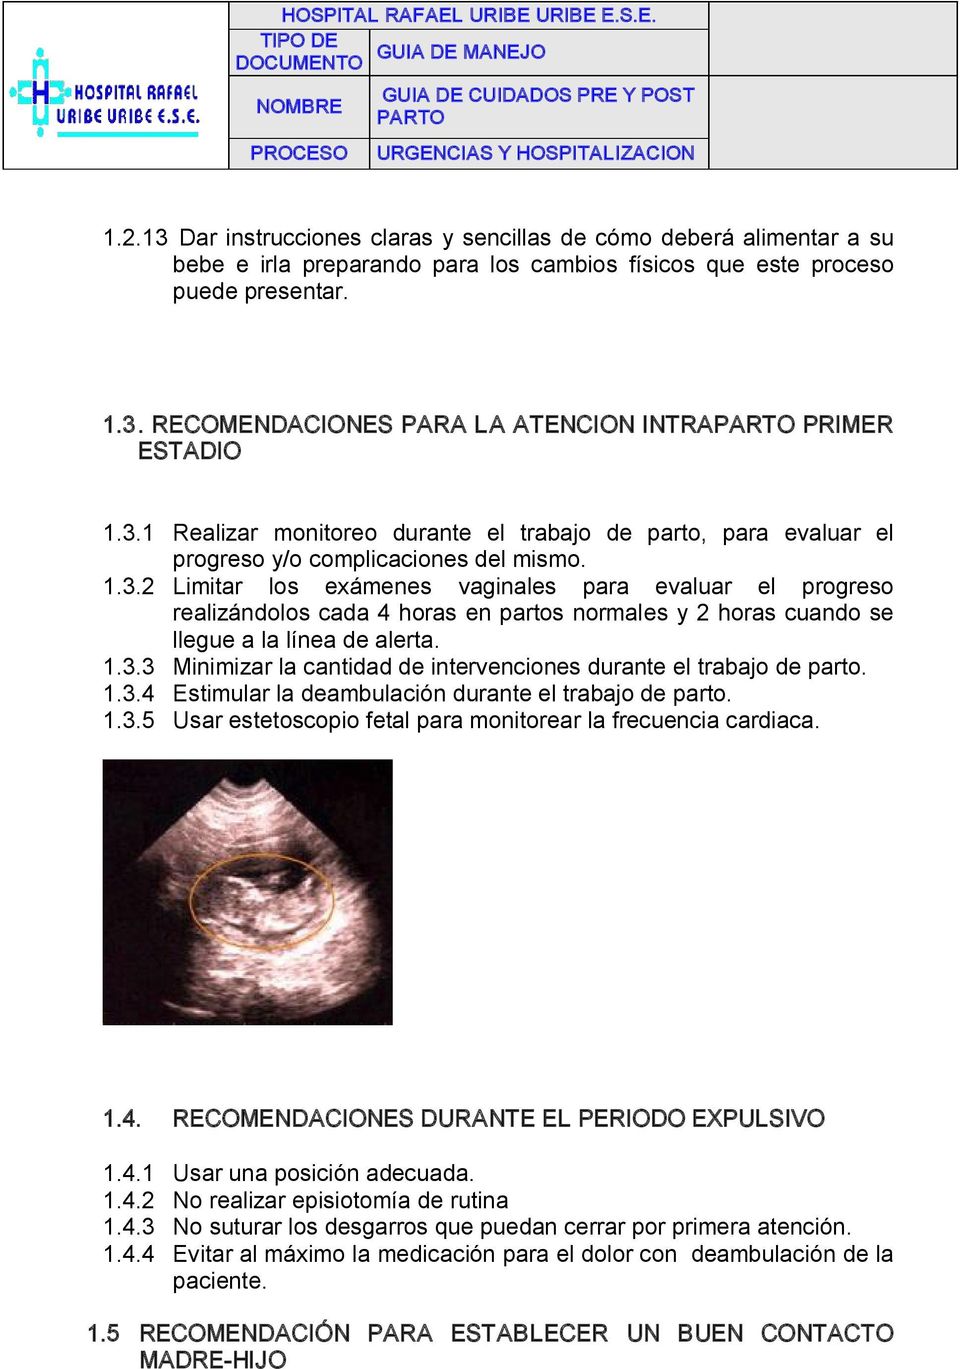 1.3.3 Minimizar la cantidad de intervenciones durante el trabajo de parto. 1.3.4 Estimular la deambulación durante el trabajo de parto. 1.3.5 Usar estetoscopio fetal para monitorear la frecuencia cardiaca.